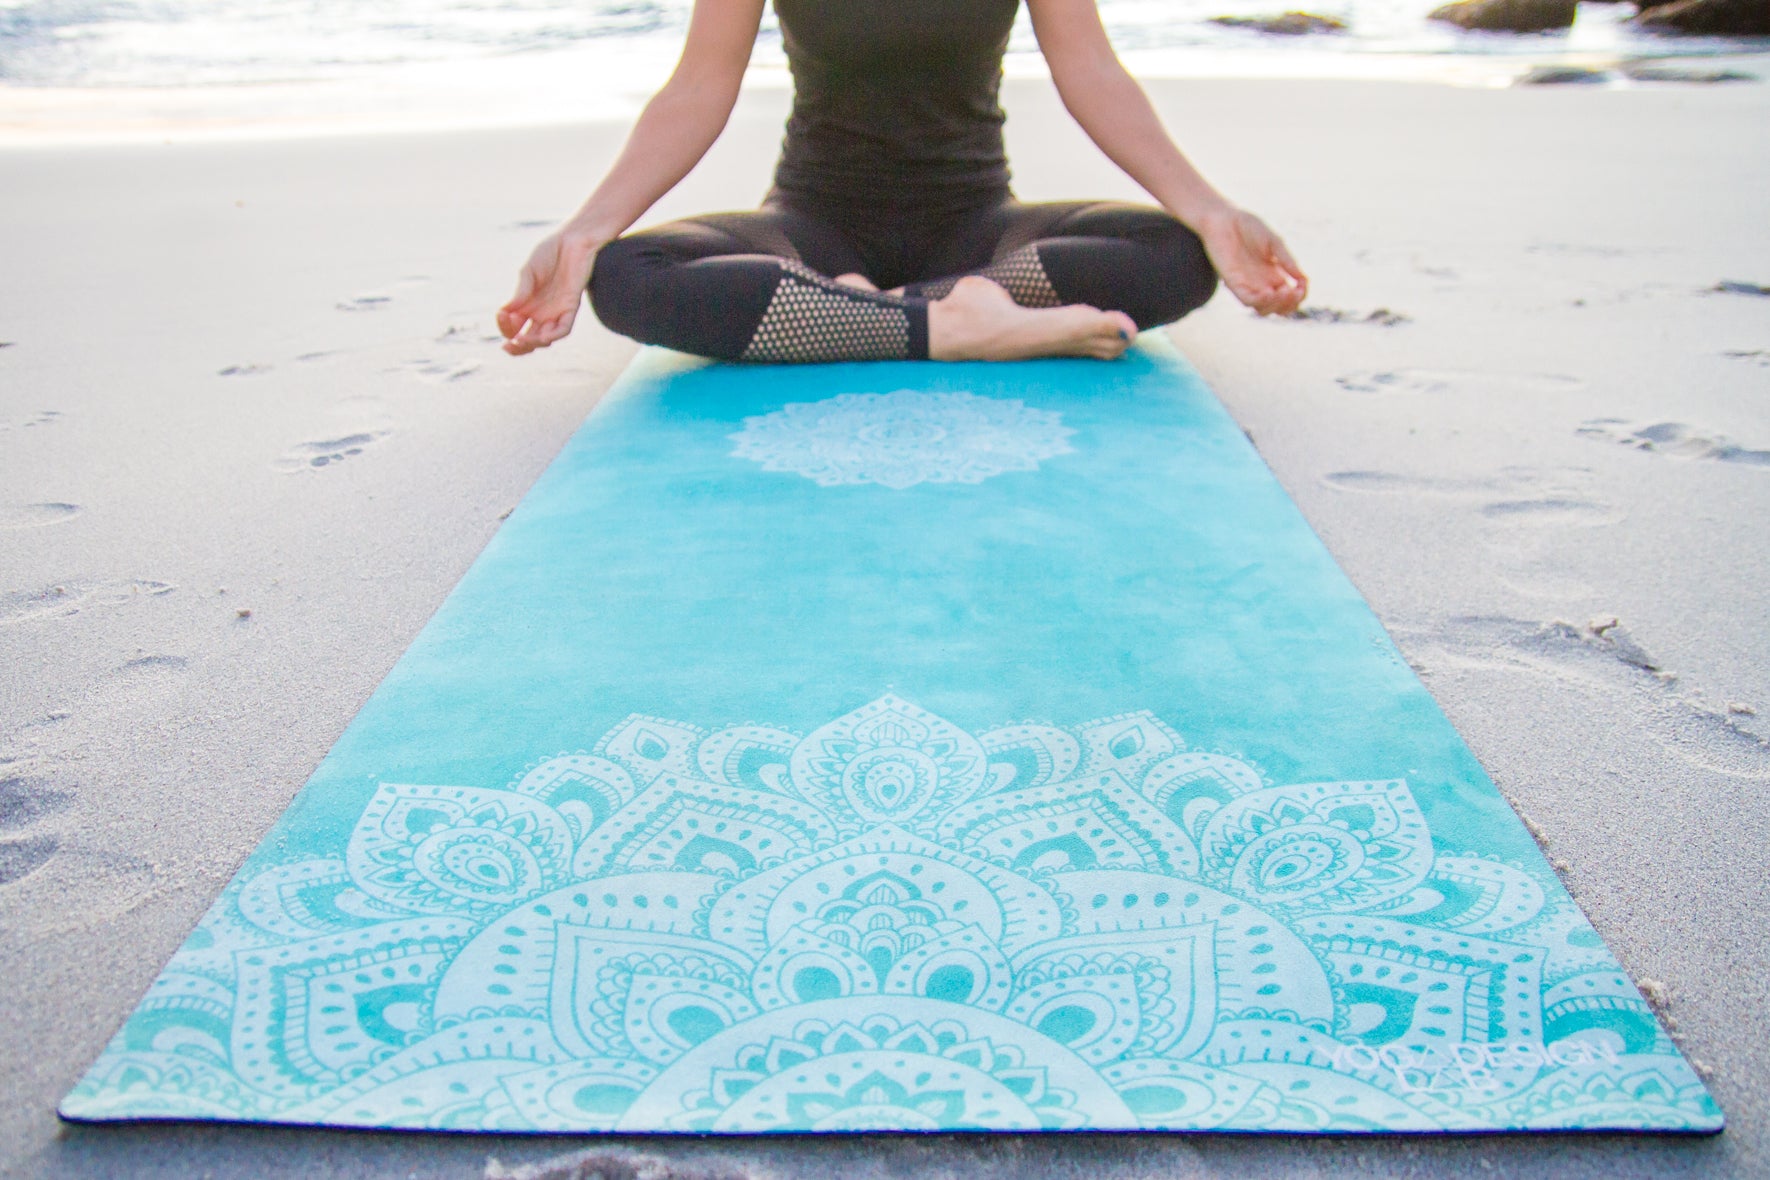  susiyo Blue Turquoise Mandala Yoga Towel with Storage